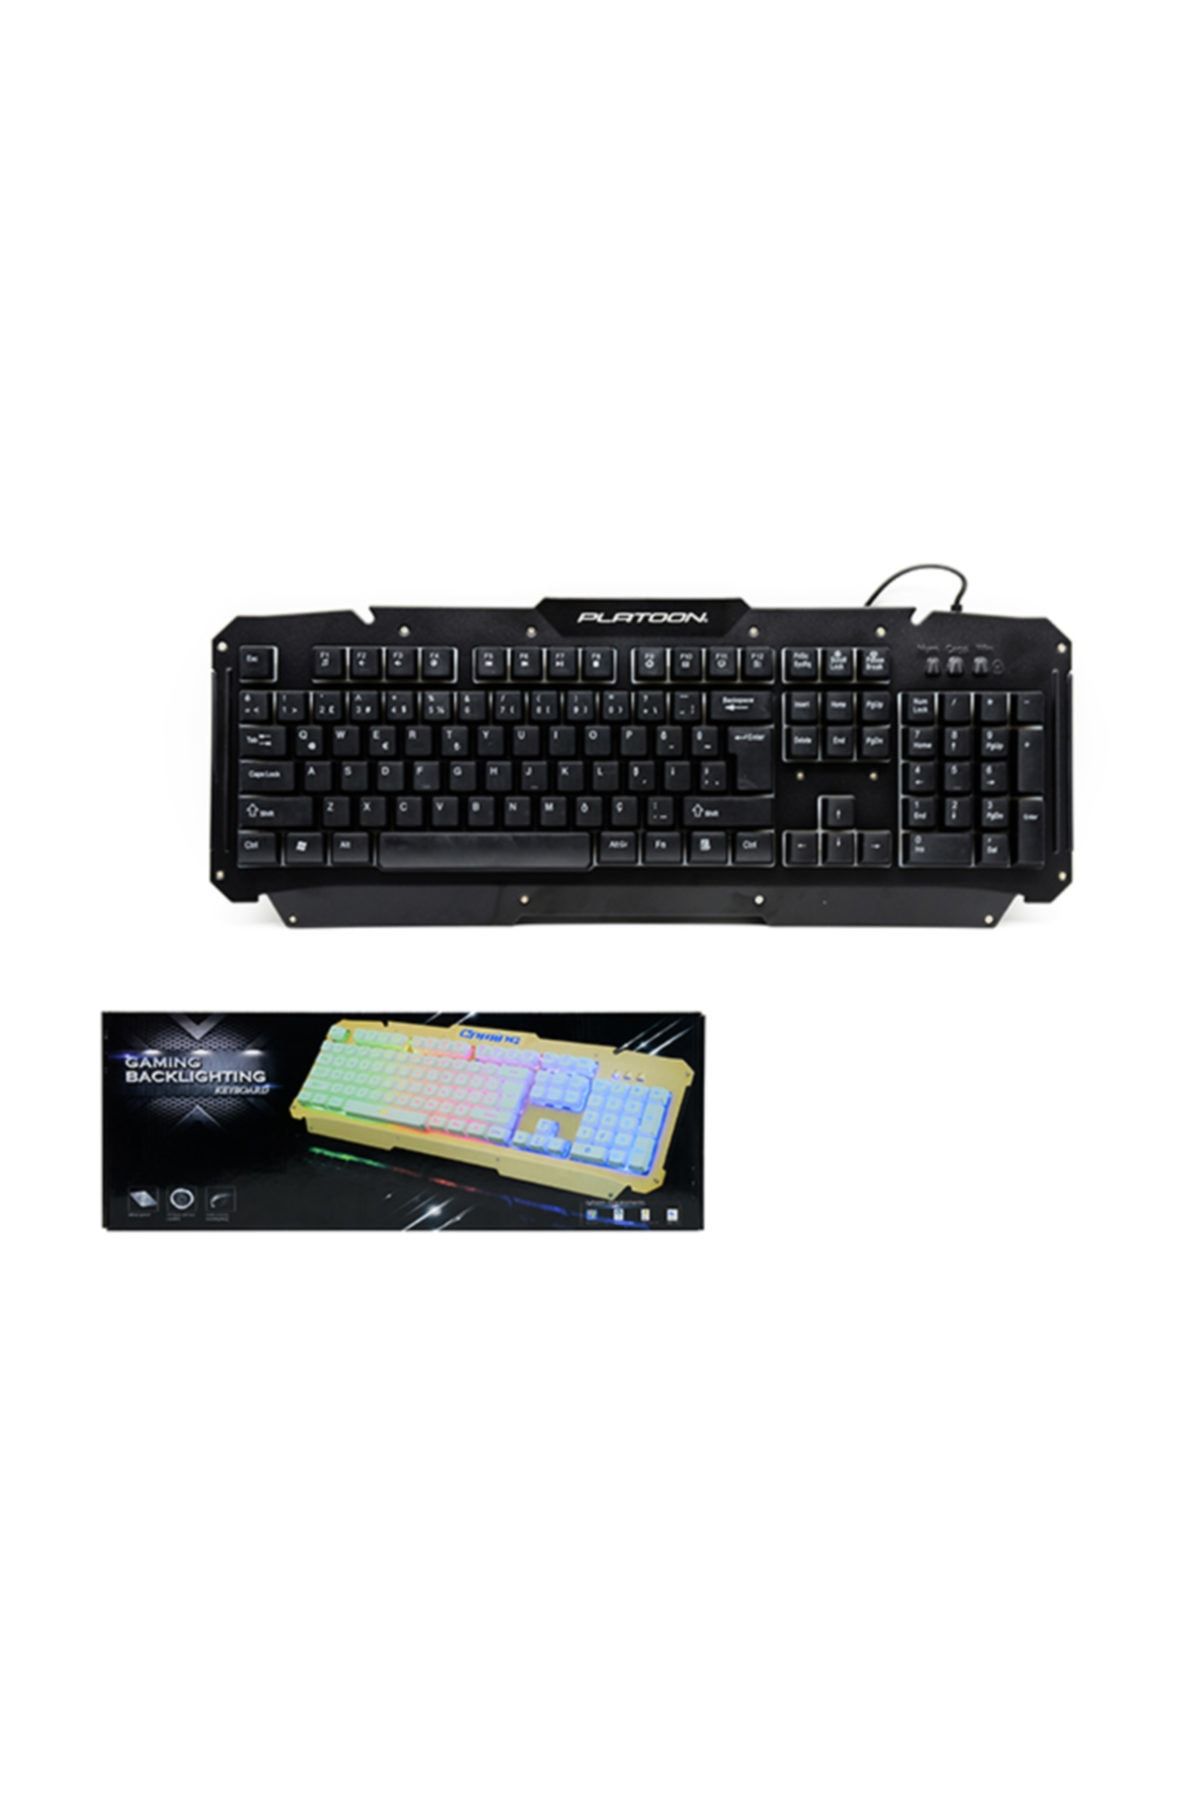 Platoon Pl-499 Mekanik Işıklı Multimedia Oyuncu Gaming Klavye